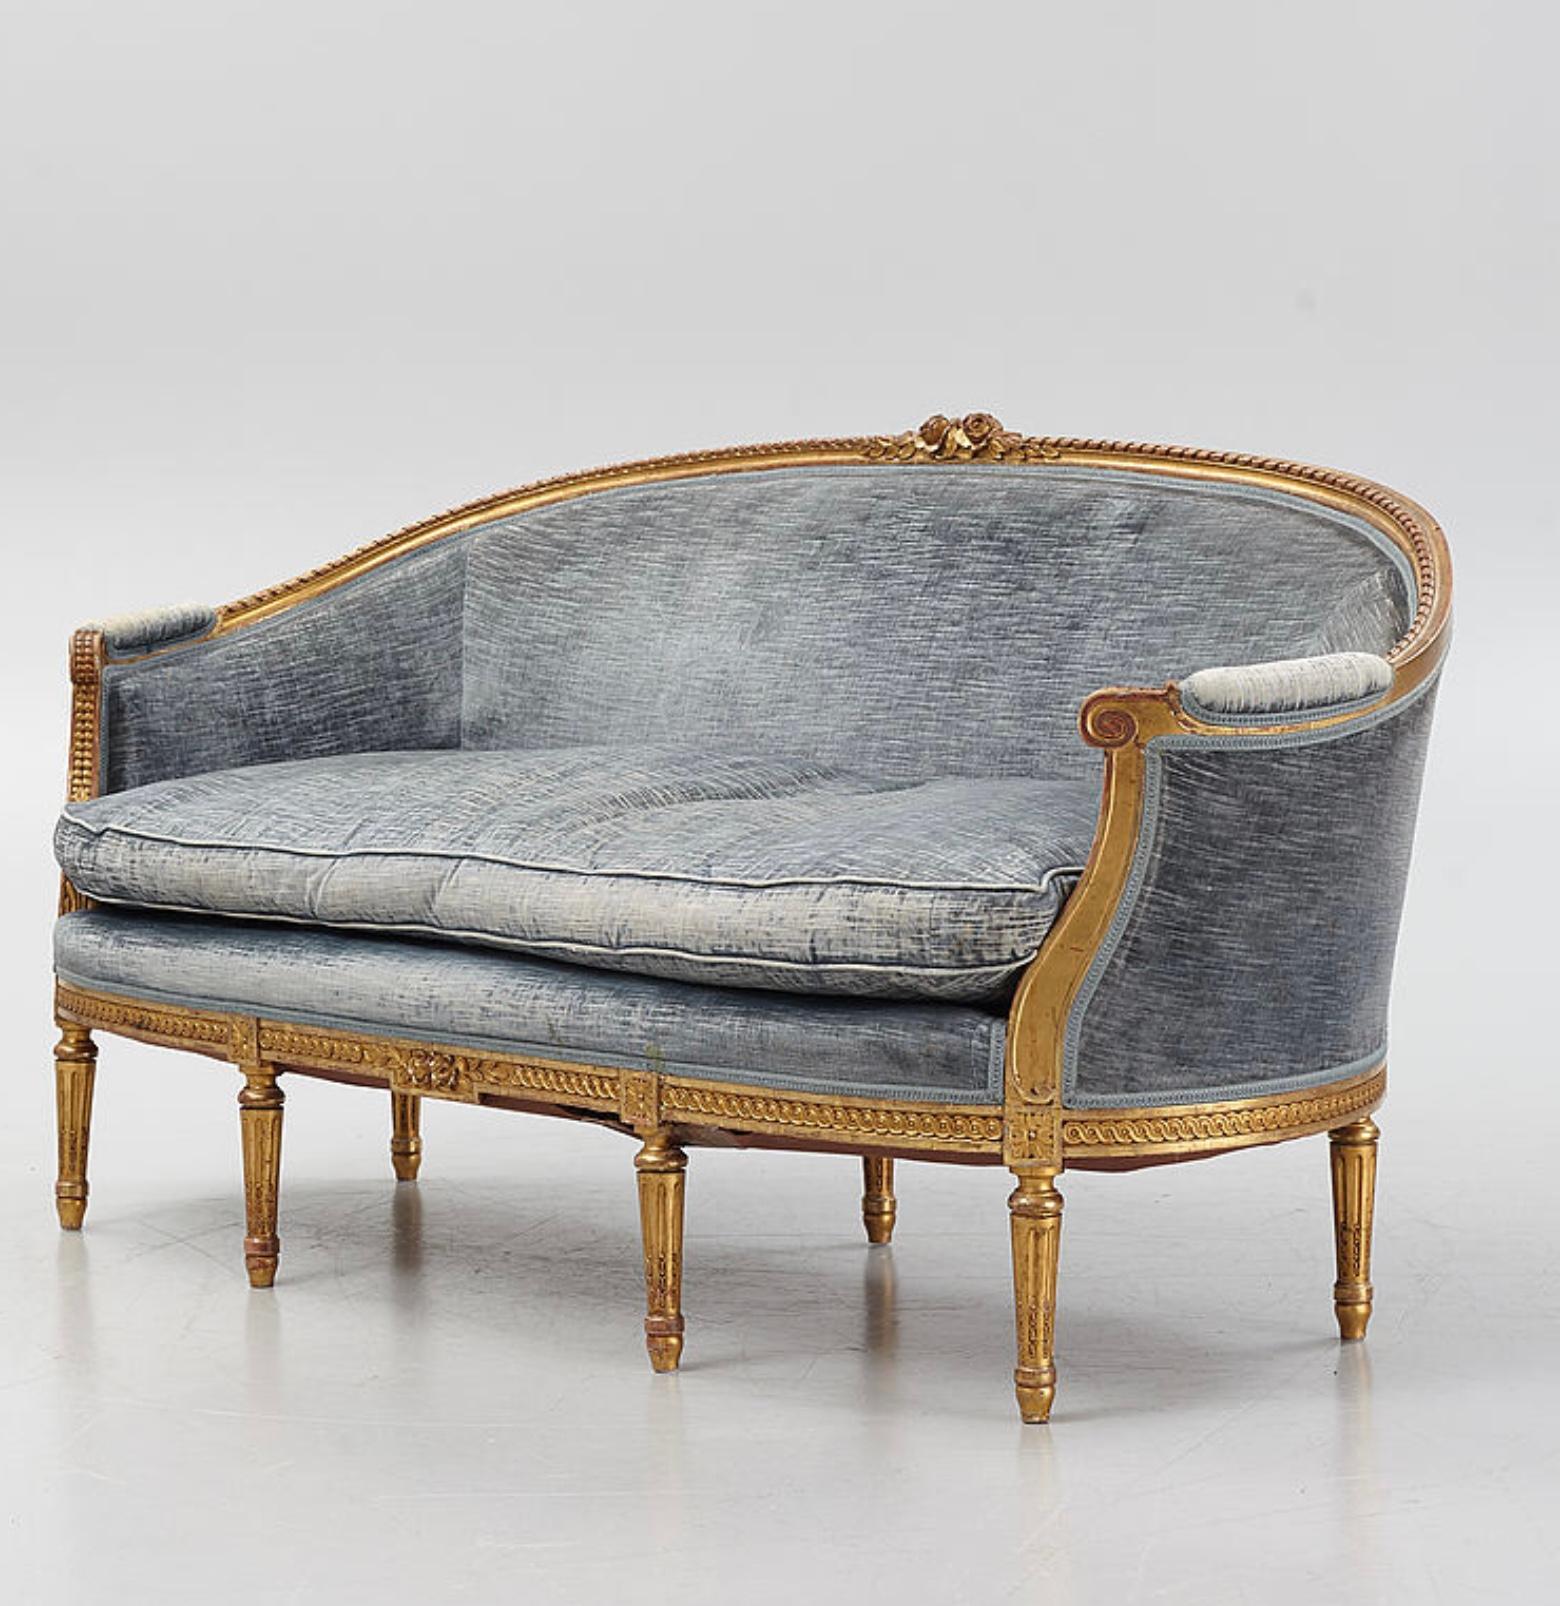 Dieses wunderbar große und bequeme schwedische zweisitzige vergoldete Sofa stammt aus der Zeit um 1900 und ist im gustavianischen Stil gestaltet.
Das Sofa verfügt über ein klassisches Rollendekor mit geschnitzten Blumen und Blättern in der Mitte und